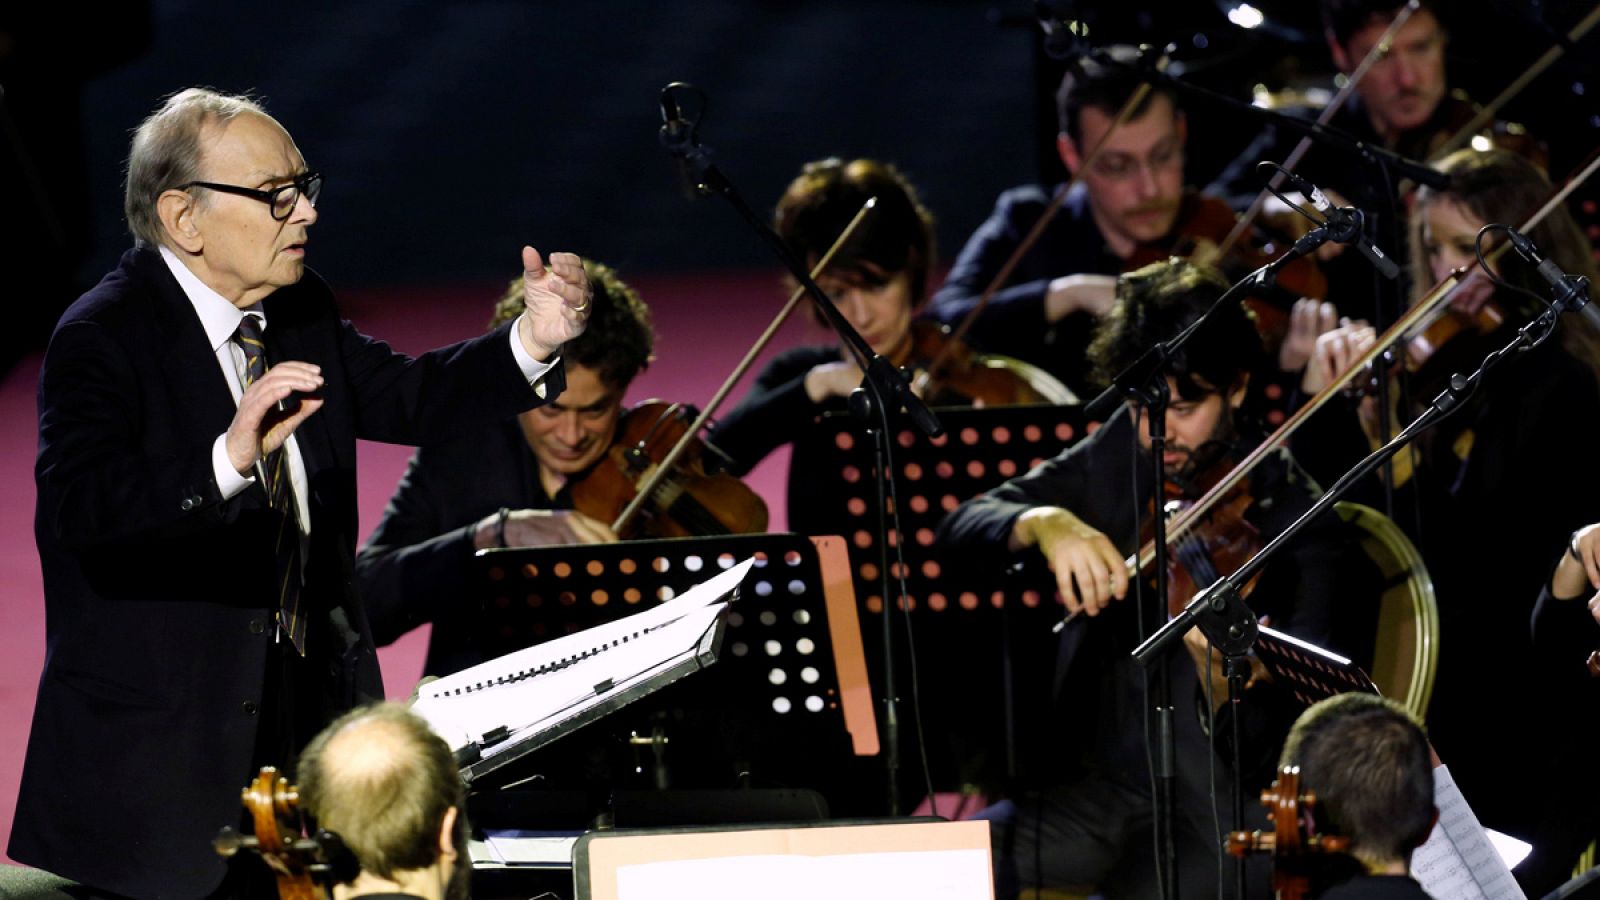 El compositor italiano Ennio Morricone dirige a la orquesta durante el concierto en el Salón Pablo VI del Vaticano.